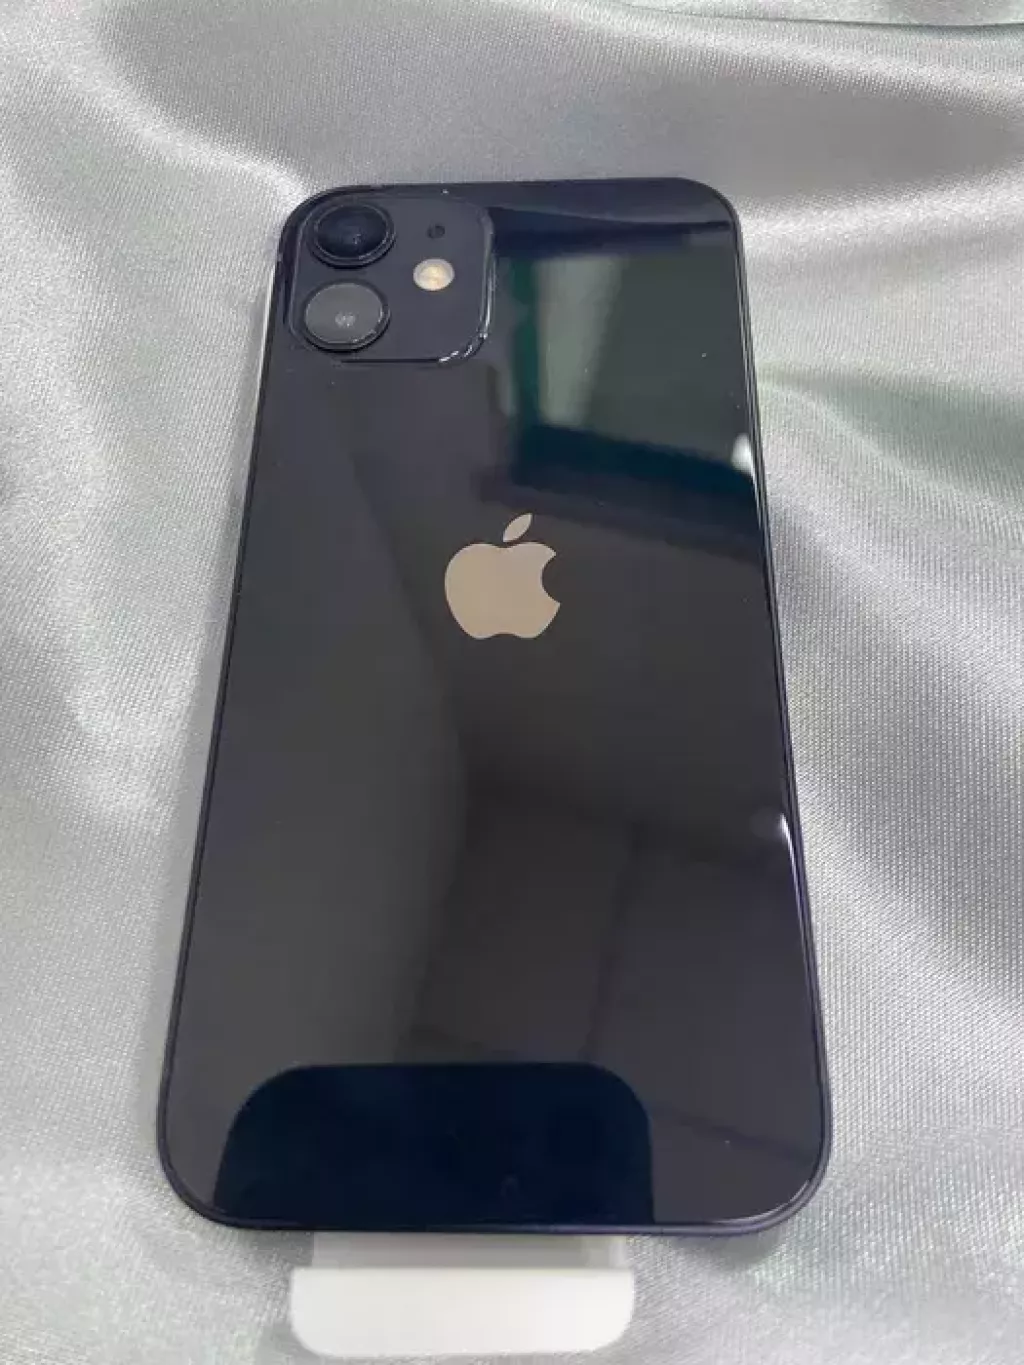 Apple iPhone 12 mini б/у купить по низкой цене в Актау